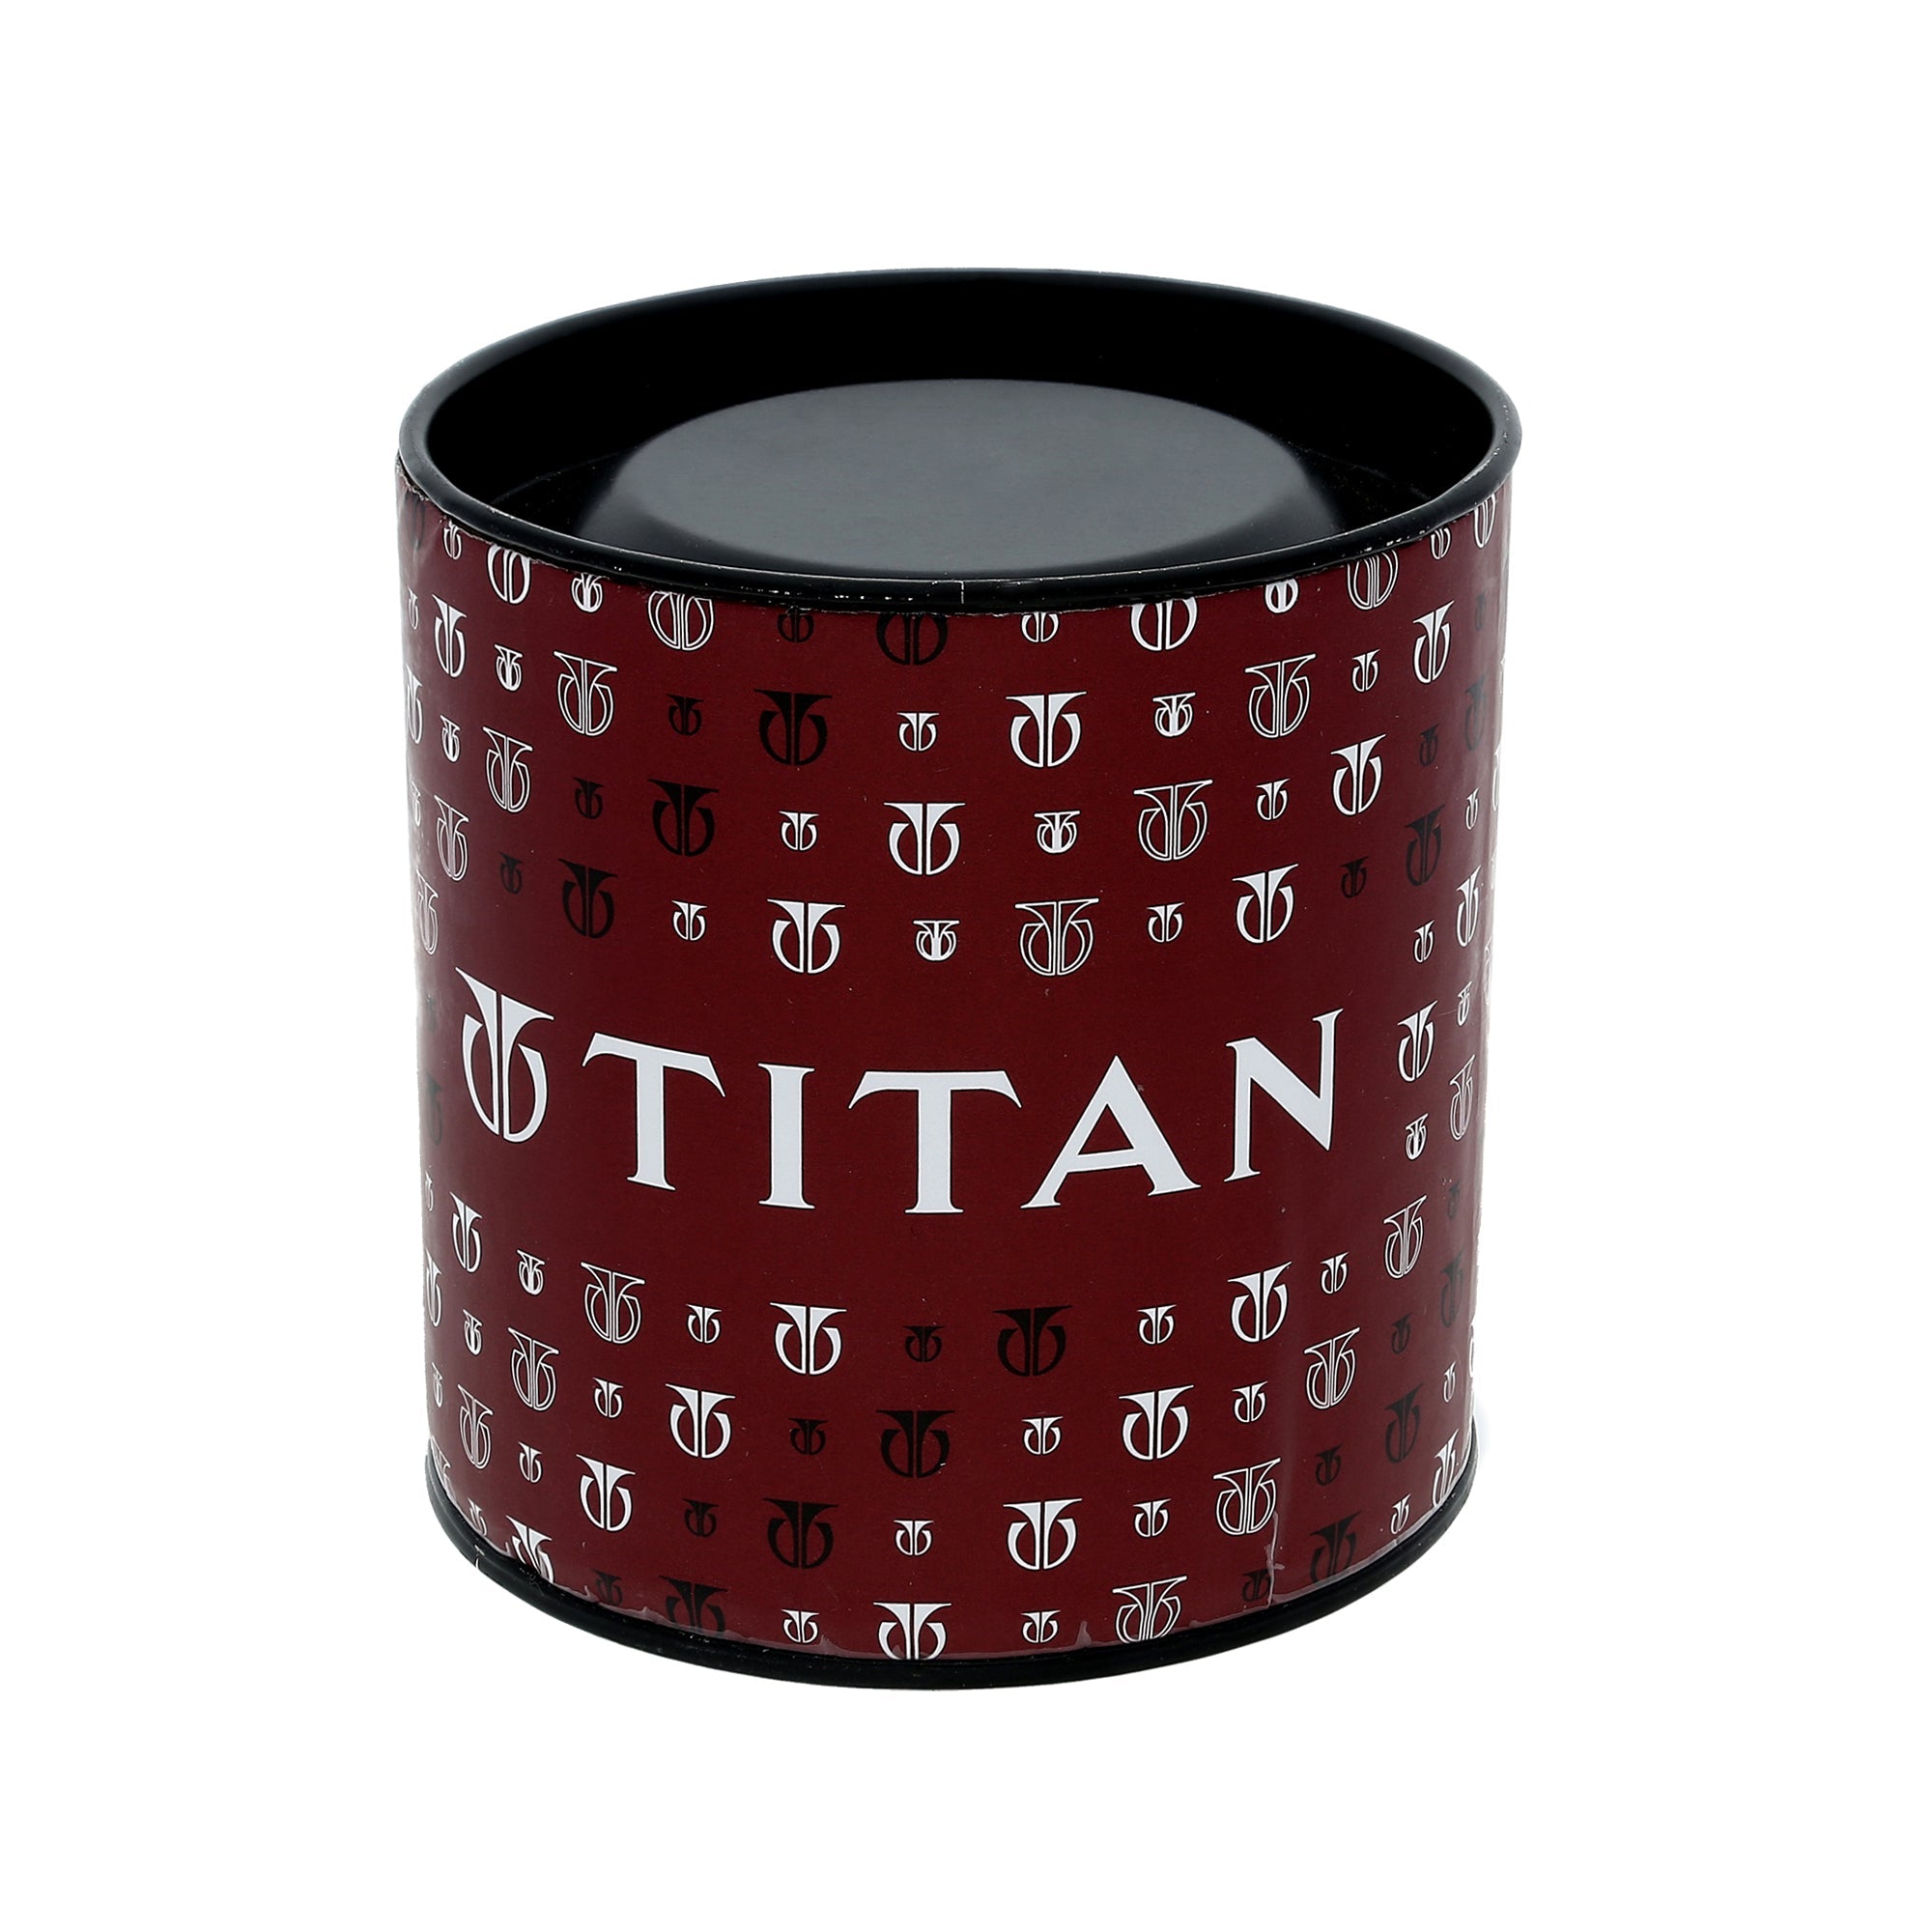 Titan Quartz Analog Champagne Dial Metal Strap Watch for Women